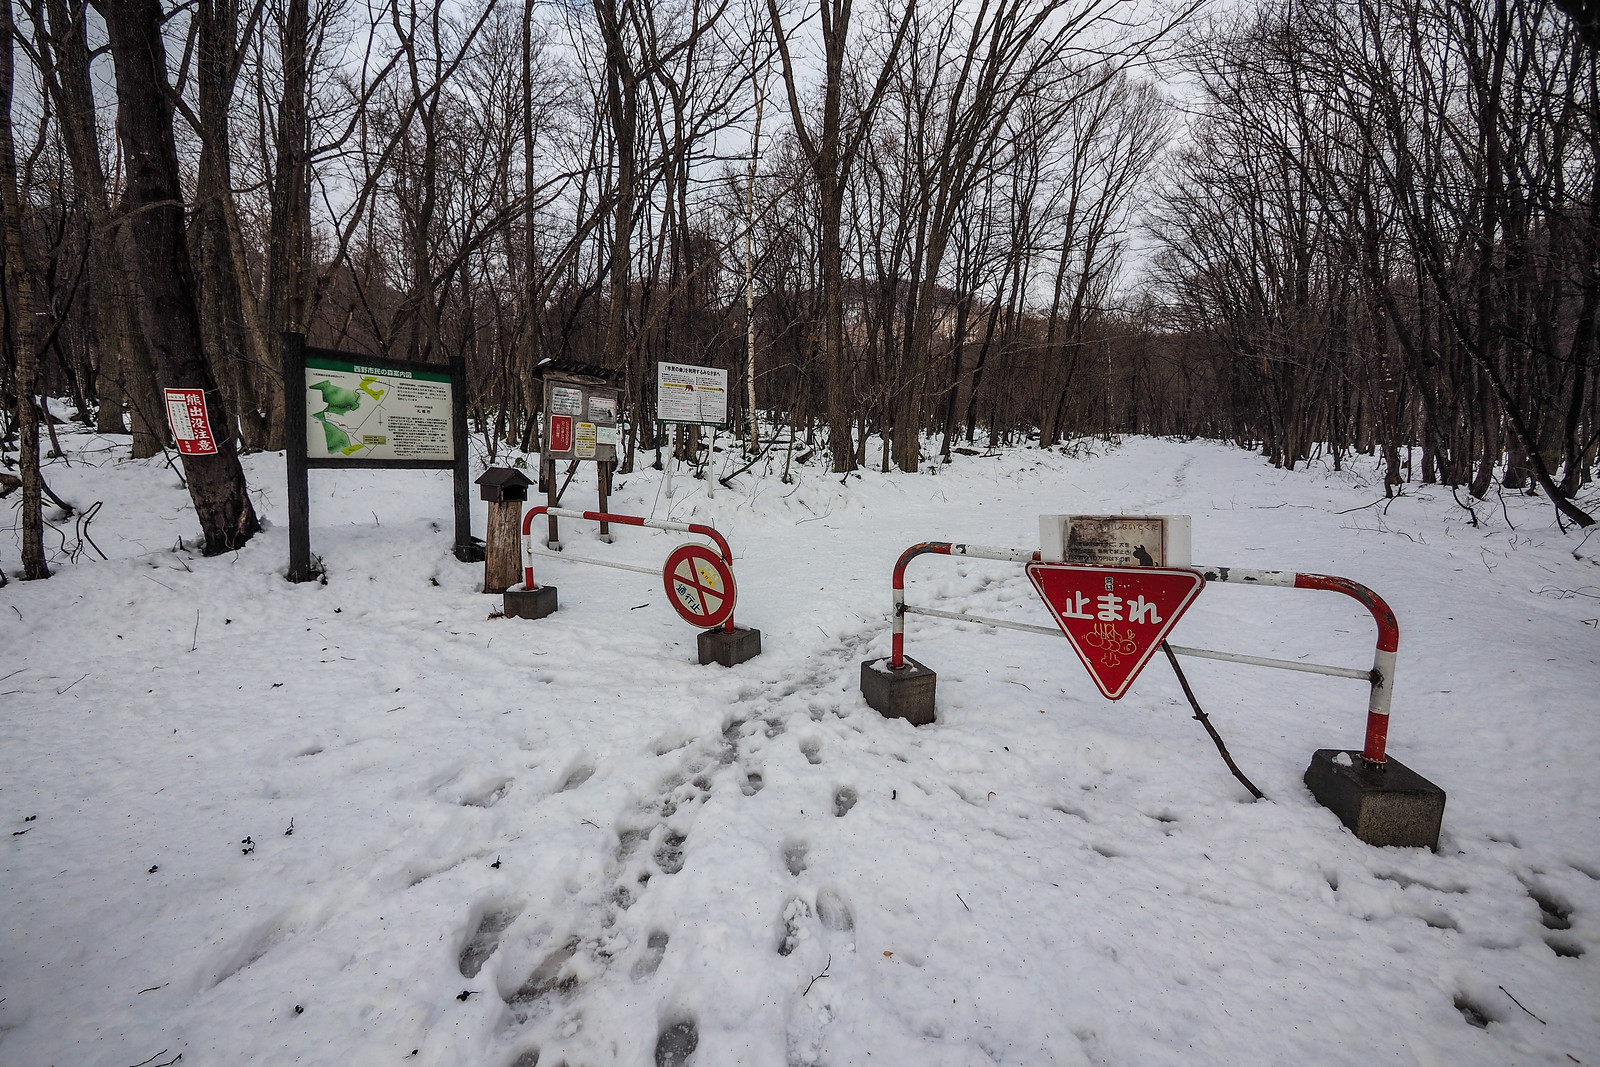 Neopara snowshoe trip (Sapporo City, Hokkaido, Japan)